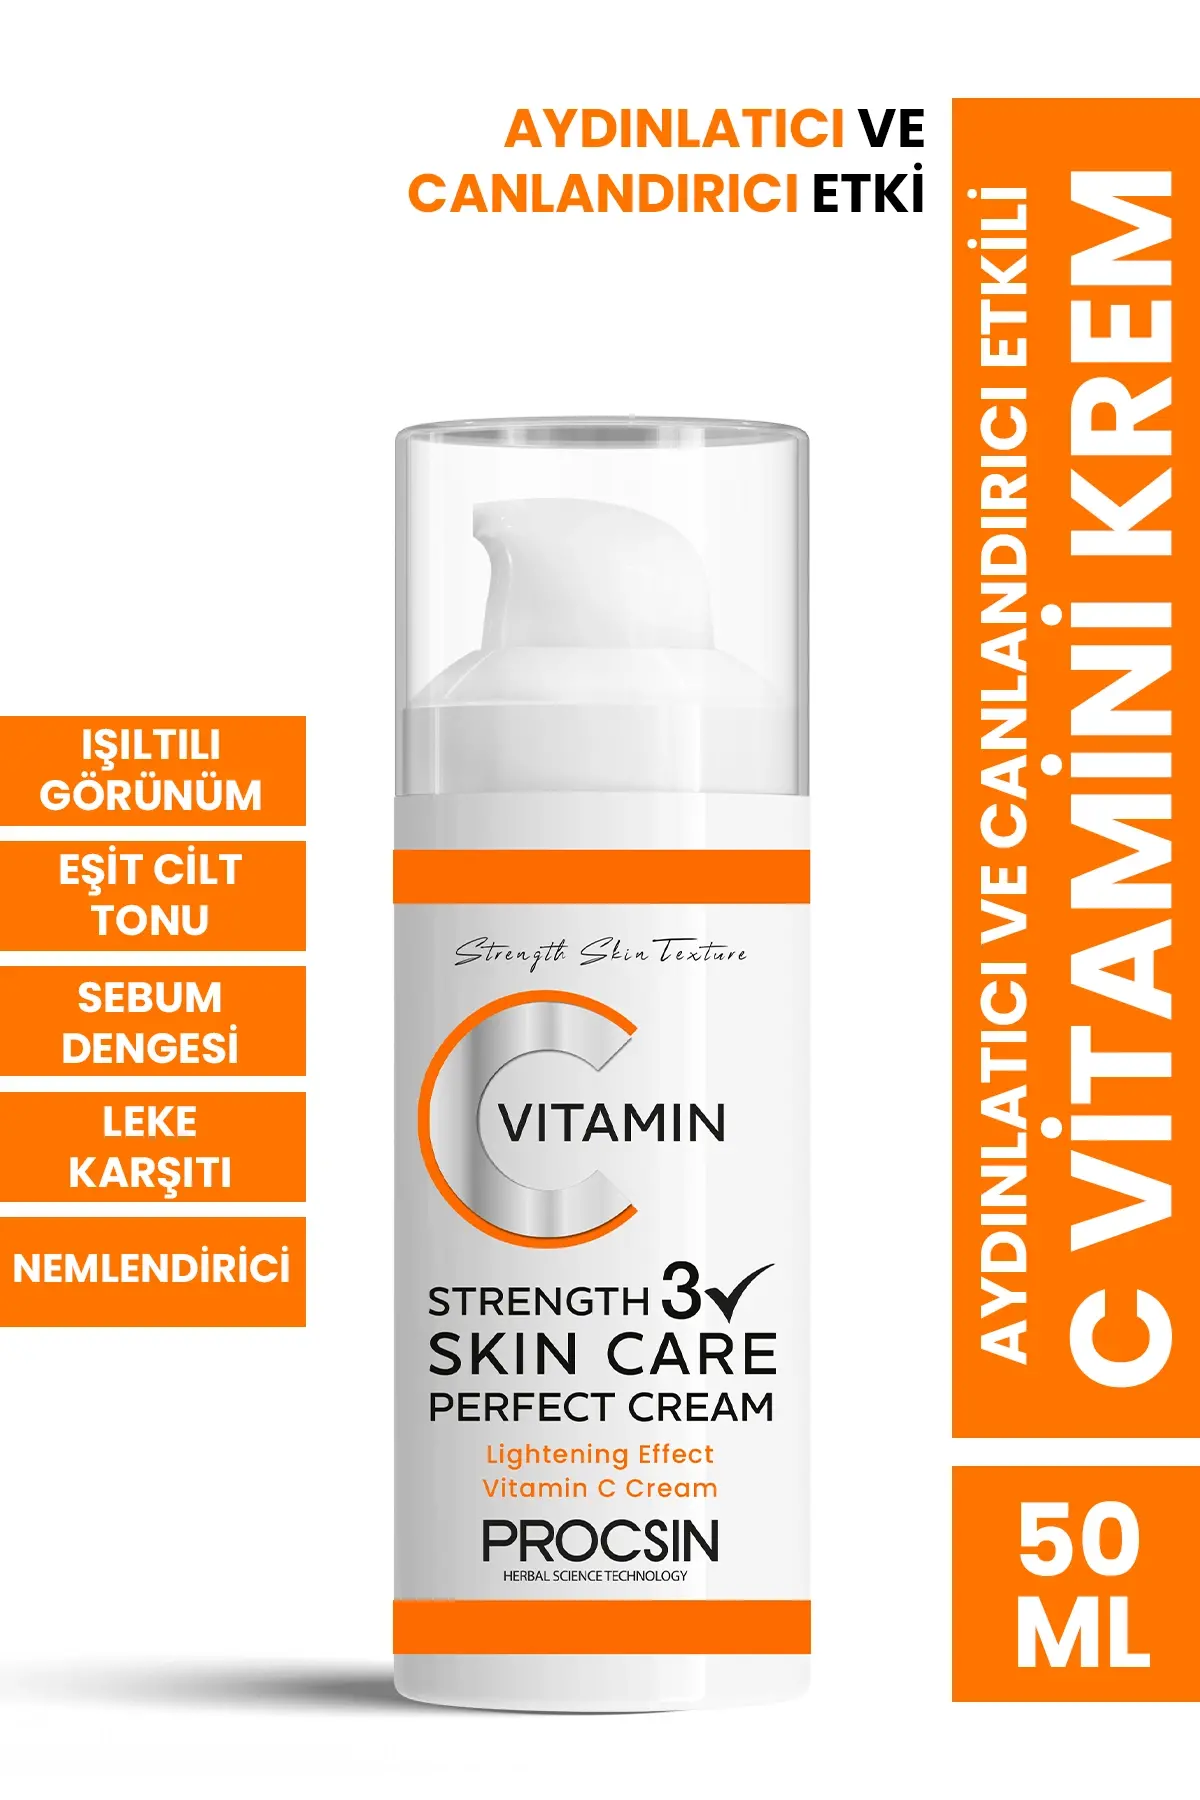 PROCSIN Brightening C Vitamin Cream 50 ML - 1